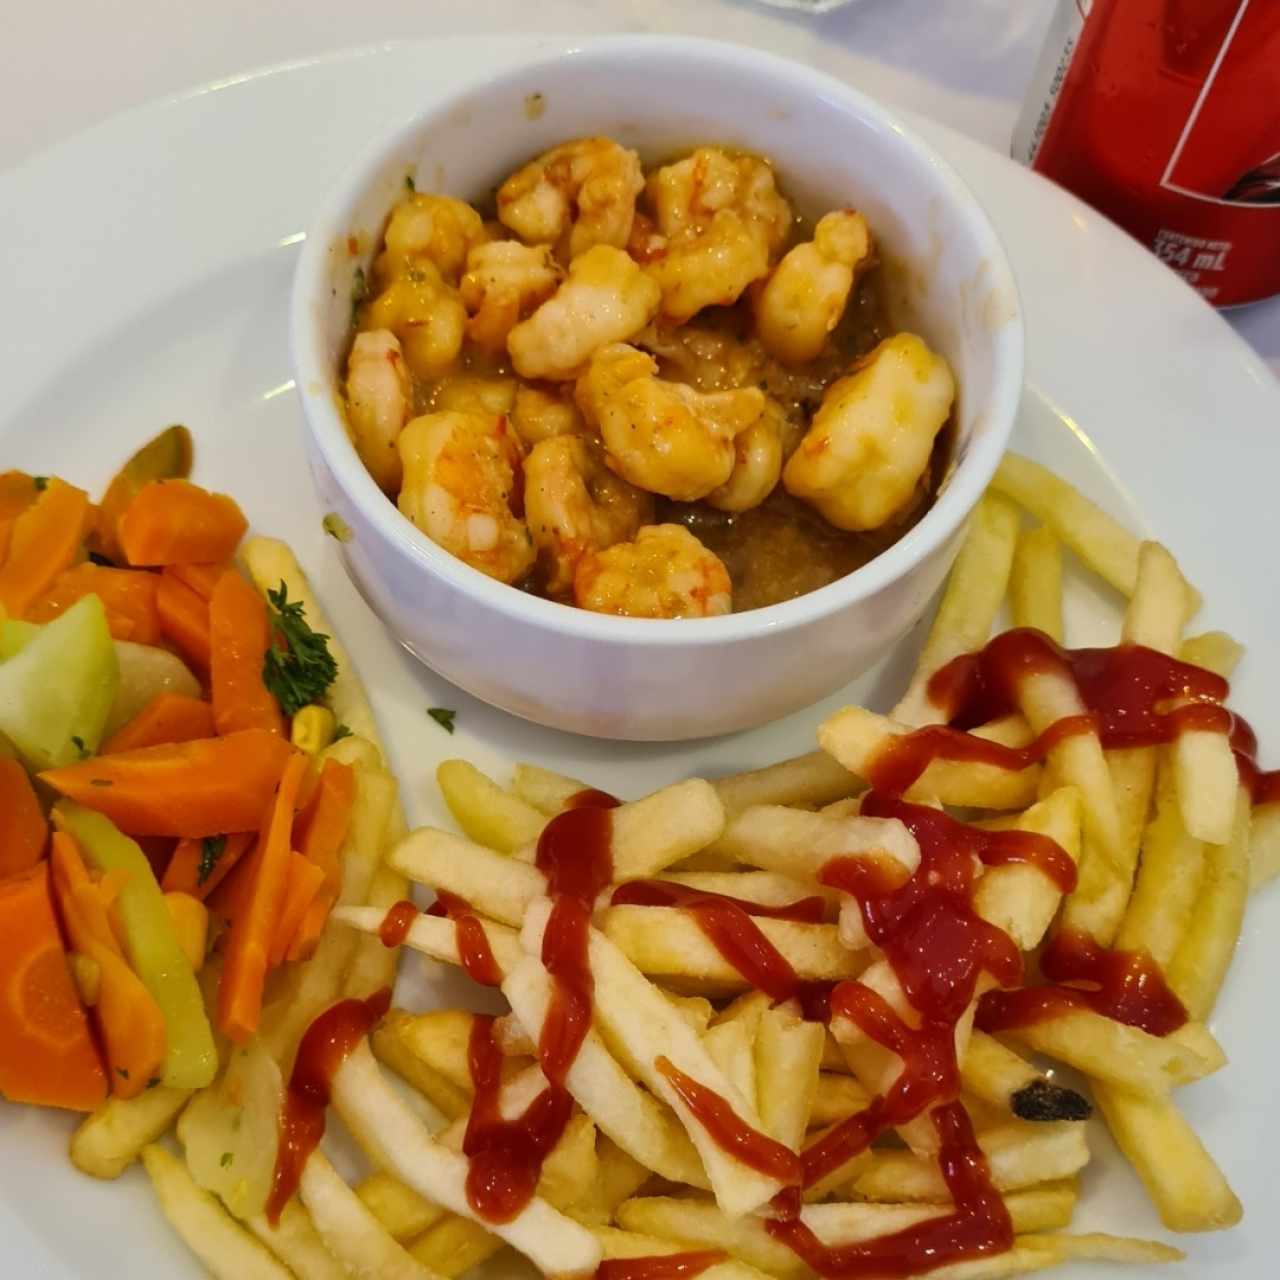 Mariscos - Camarones / shrimps